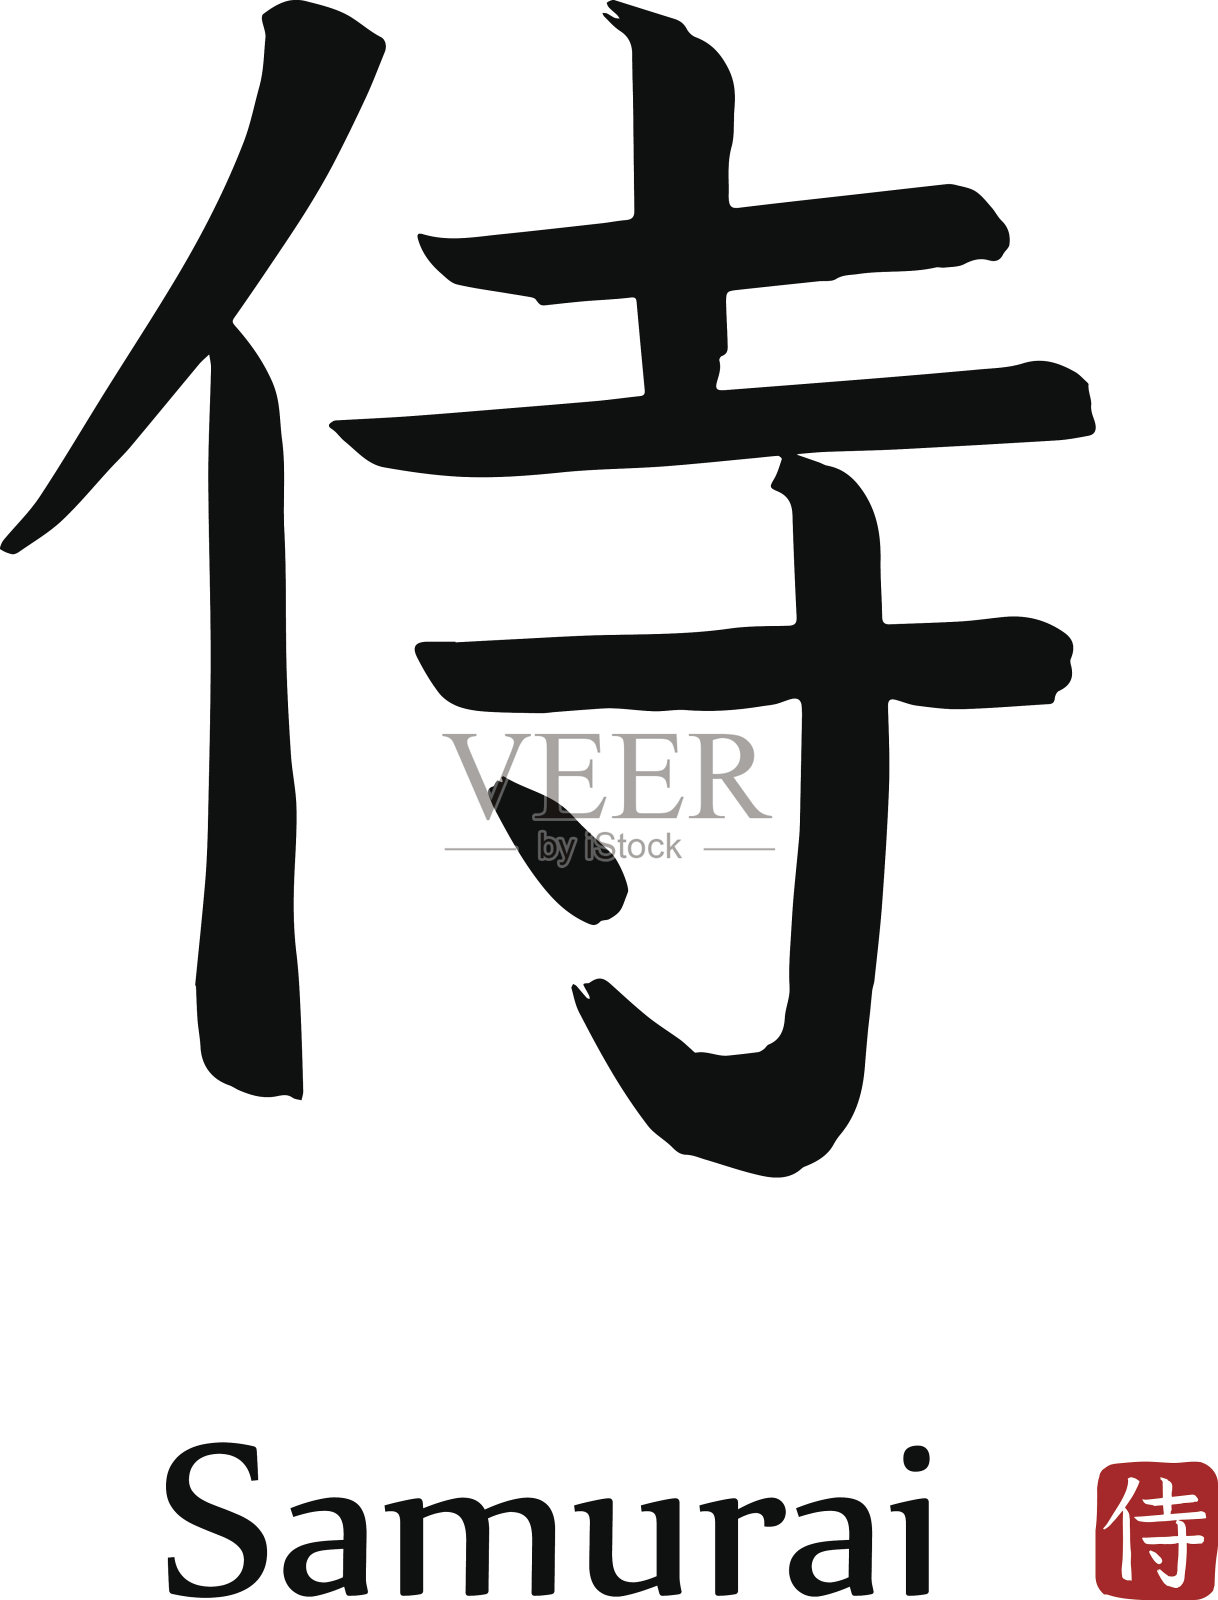 手绘象形文字翻译成武士。矢量日本黑色符号在白色背景与文本。墨笔书法与红色邮票设计元素图片